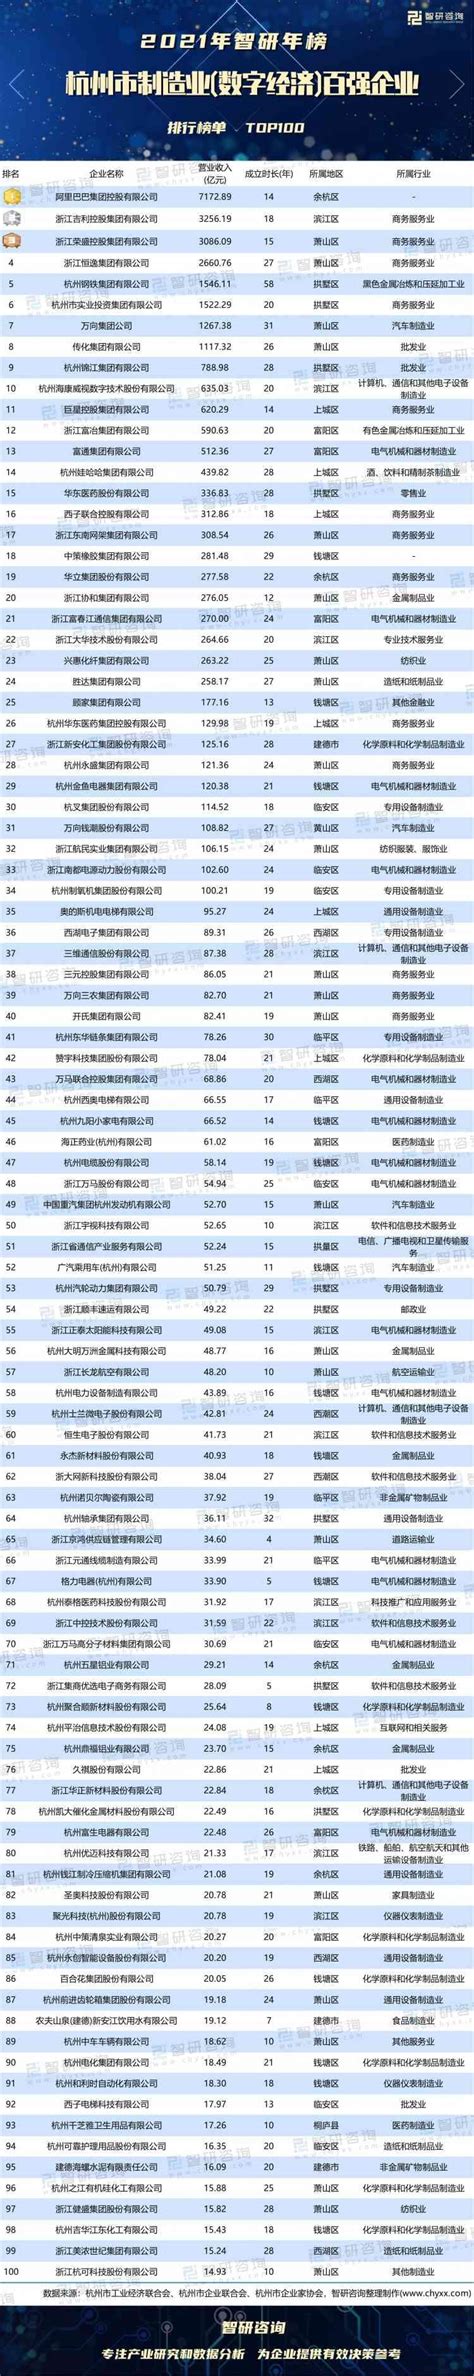 杭州新增上市公司数再登历史高峰